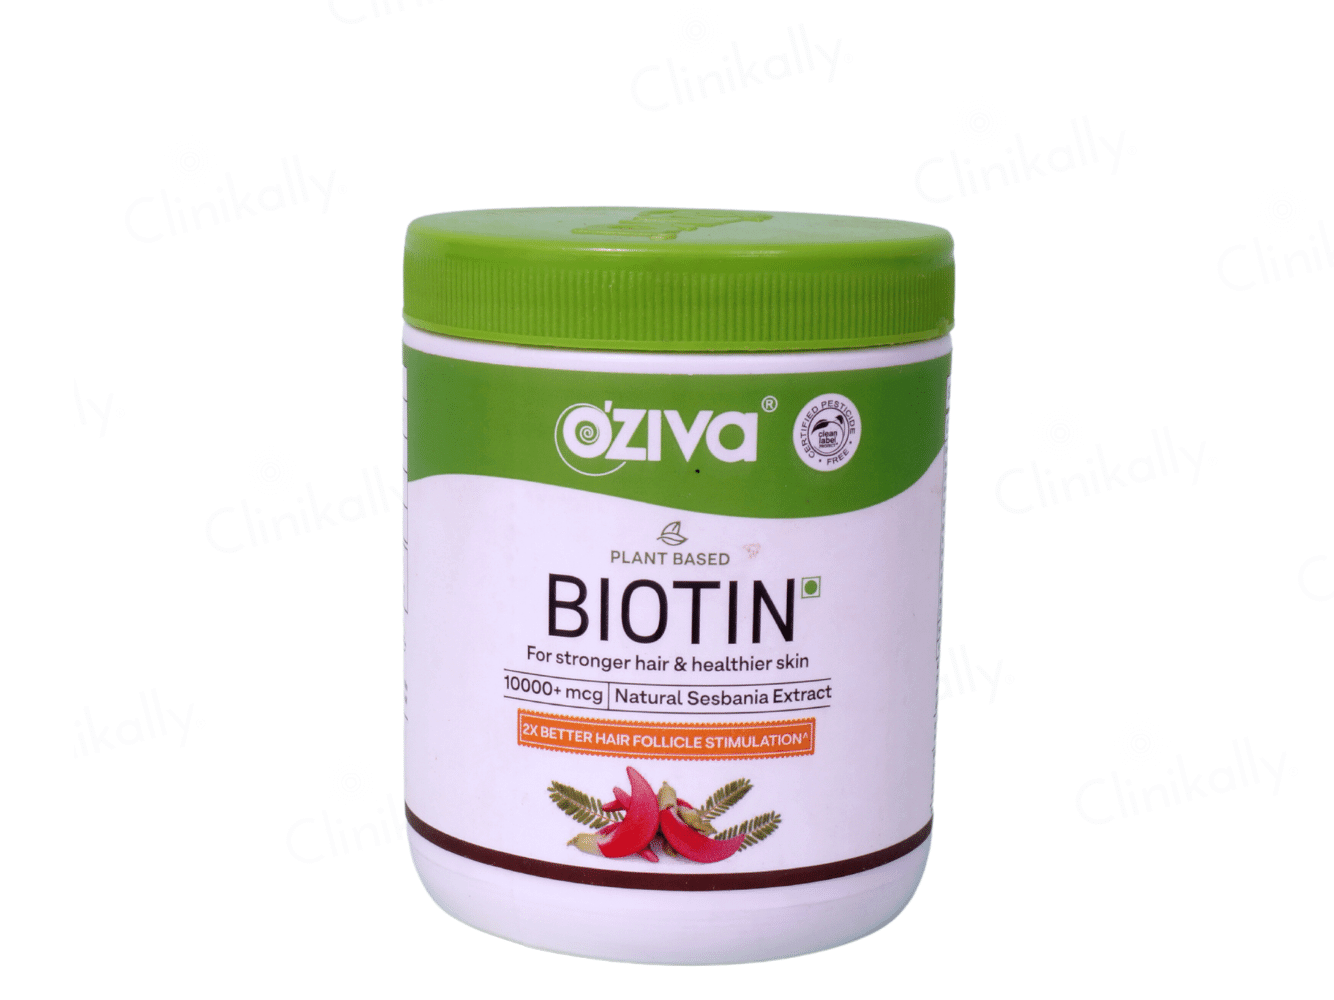 Oziva Biotin 10,000+ mcg for Stronger Hair & Healthier Skin